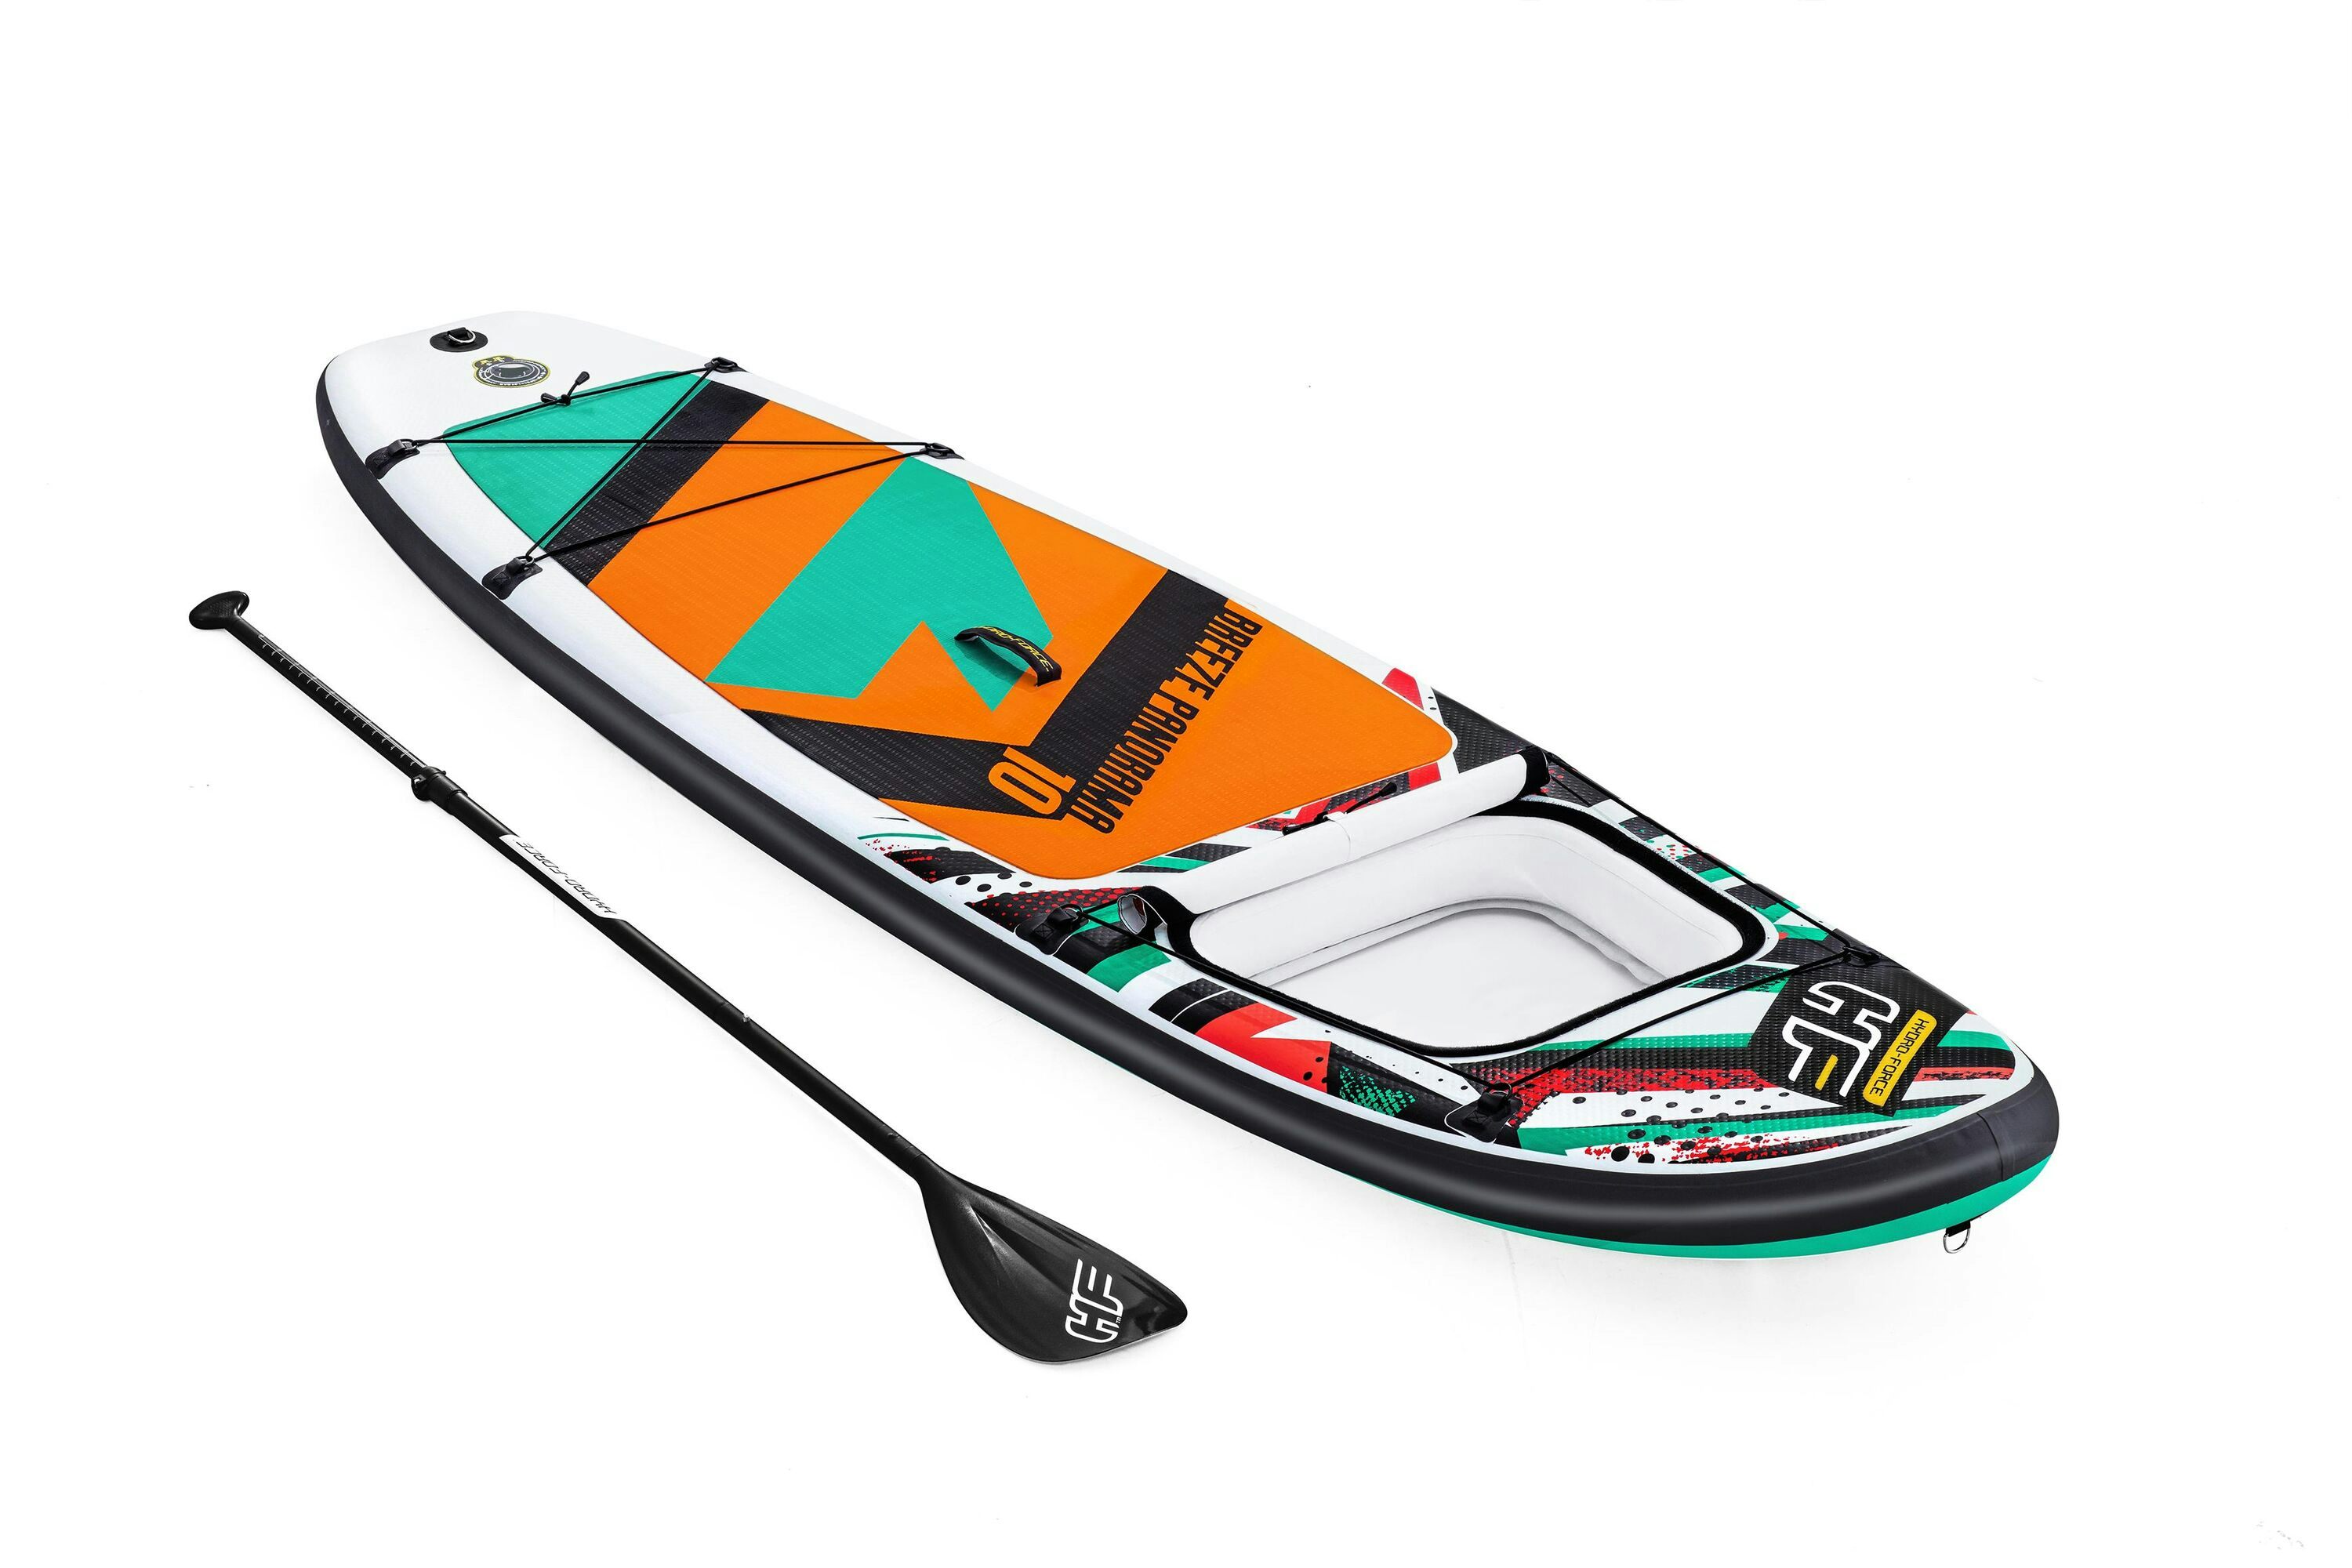 Sports d'eau Paddle SUP gonflable Hydro-Force™ Breeze Panorama, 305 x 84 x 12 cm avec hublot, pagaie, leash, pompe, 1 aileron et sac à dos de transport Bestway 1